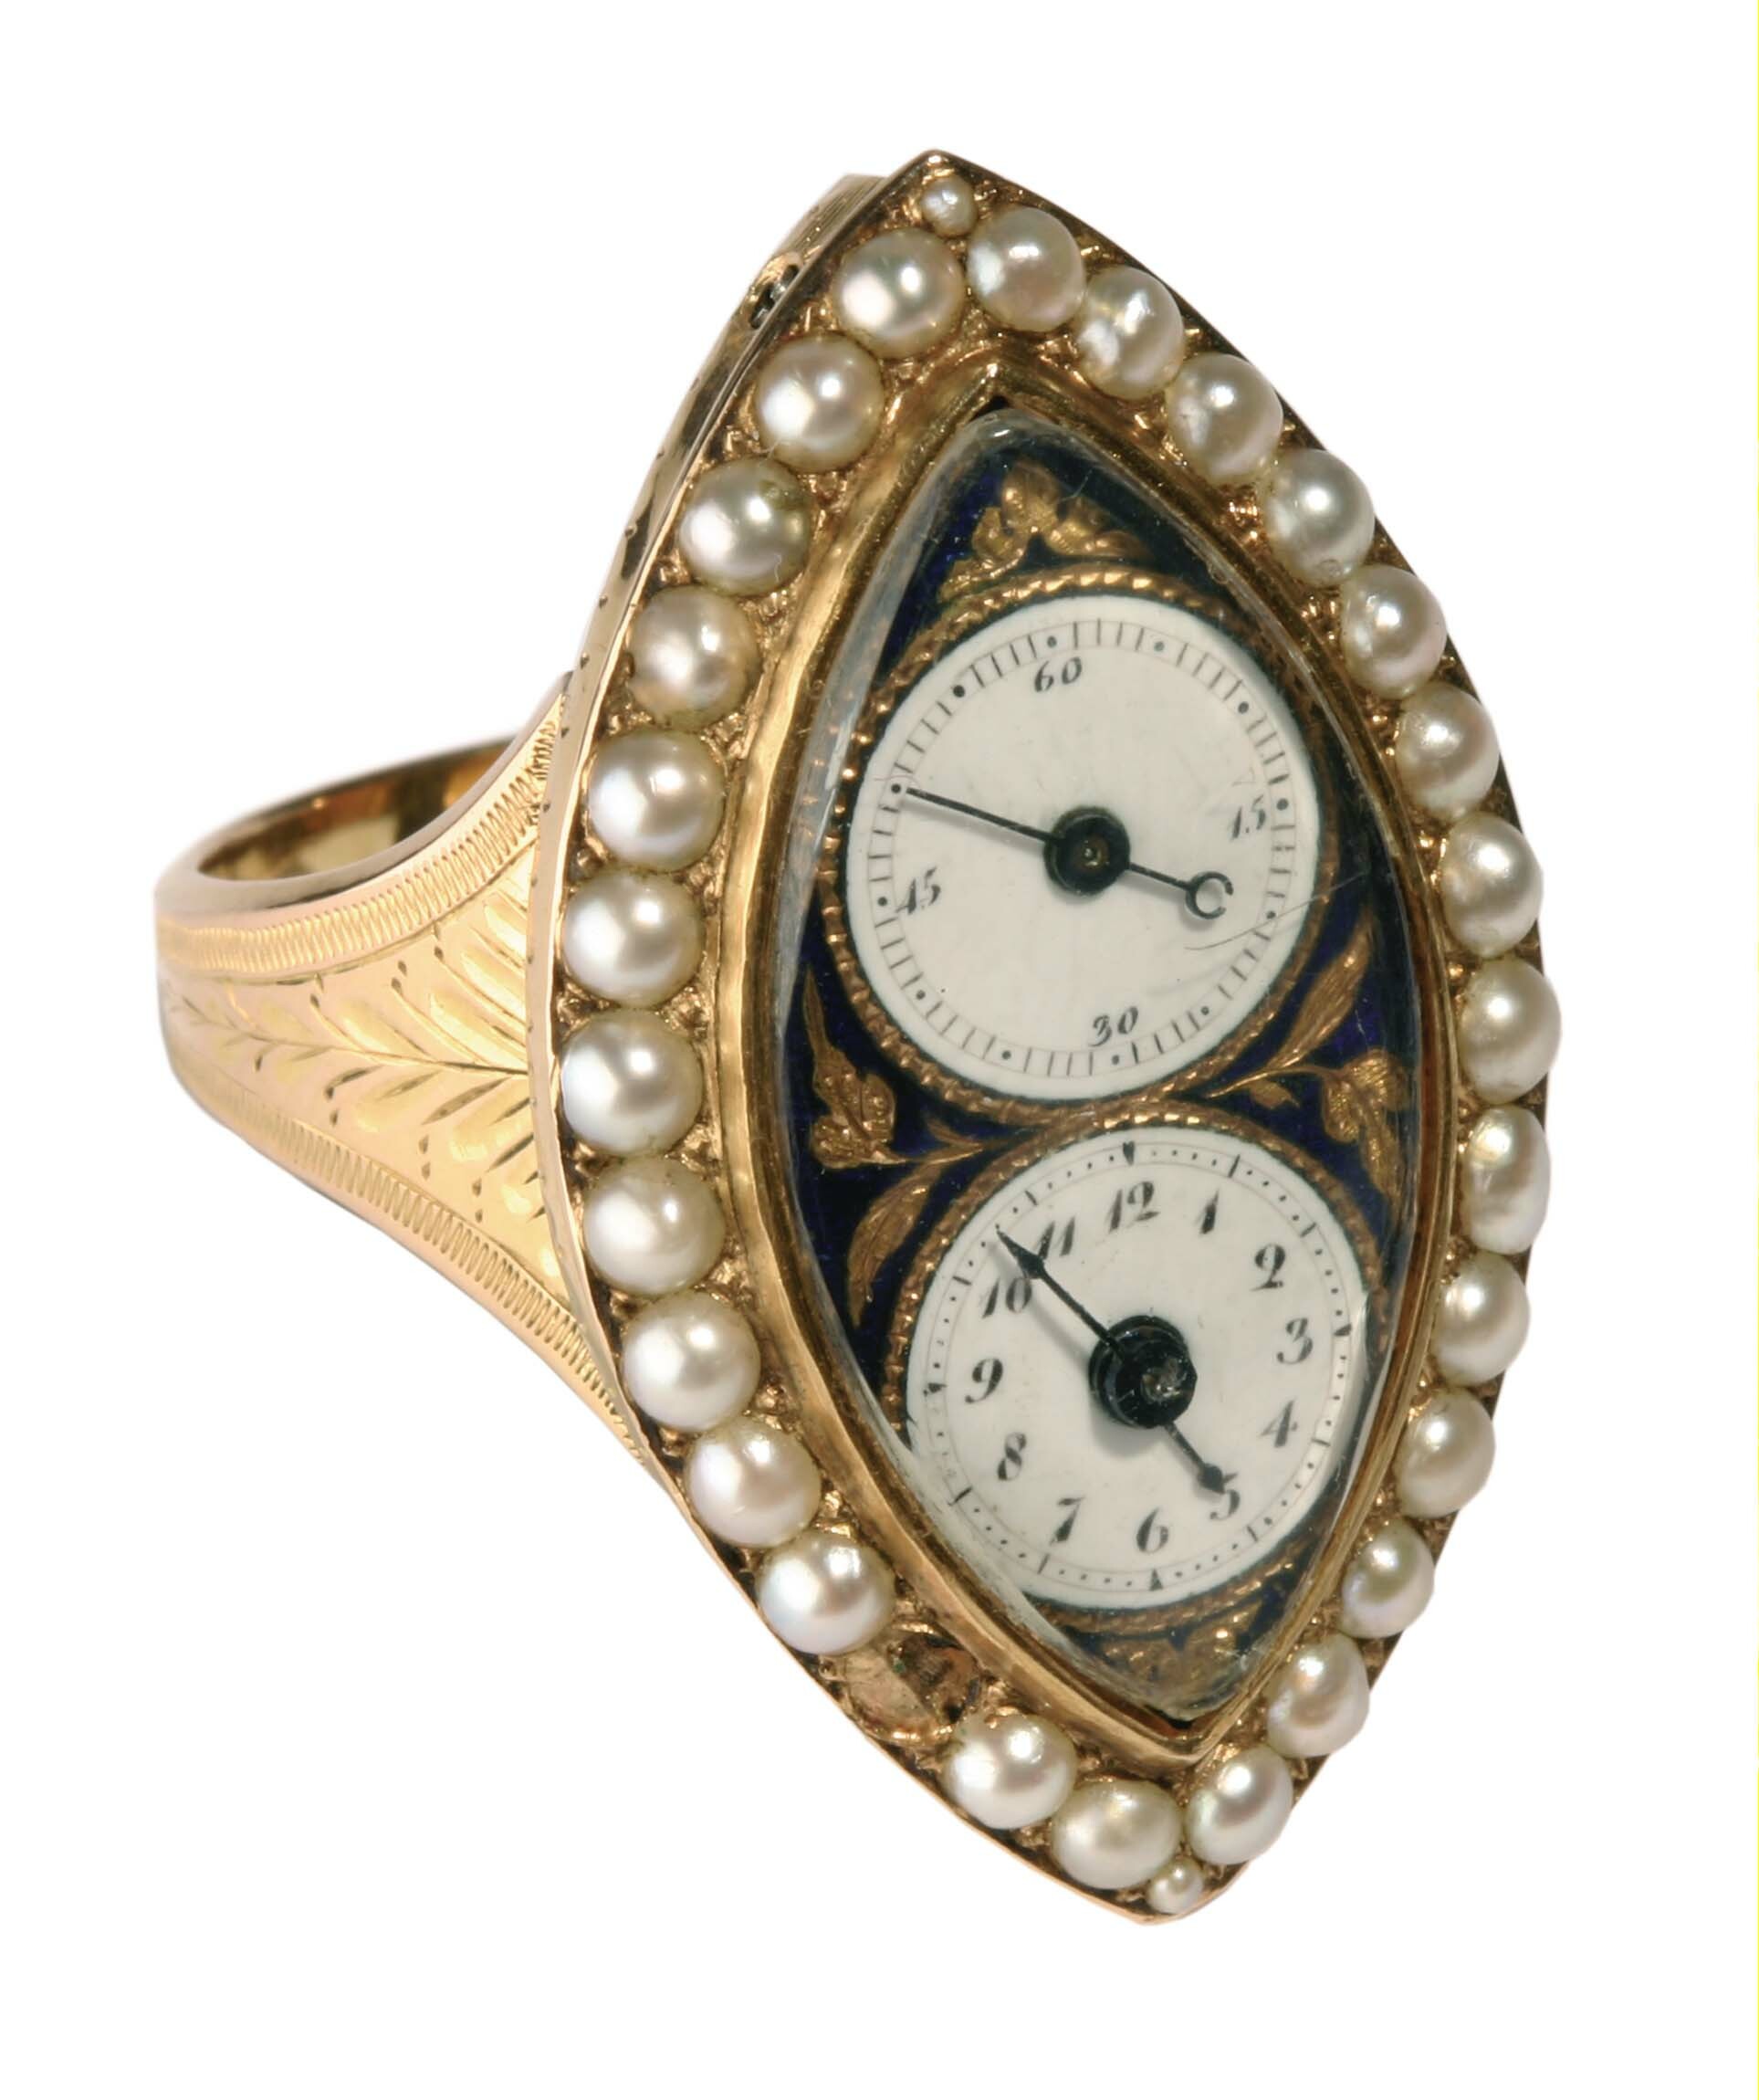 Fingerring mit Uhr, wohl Genf, um 1800 (Deutsches Uhrenmuseum CC BY-SA)